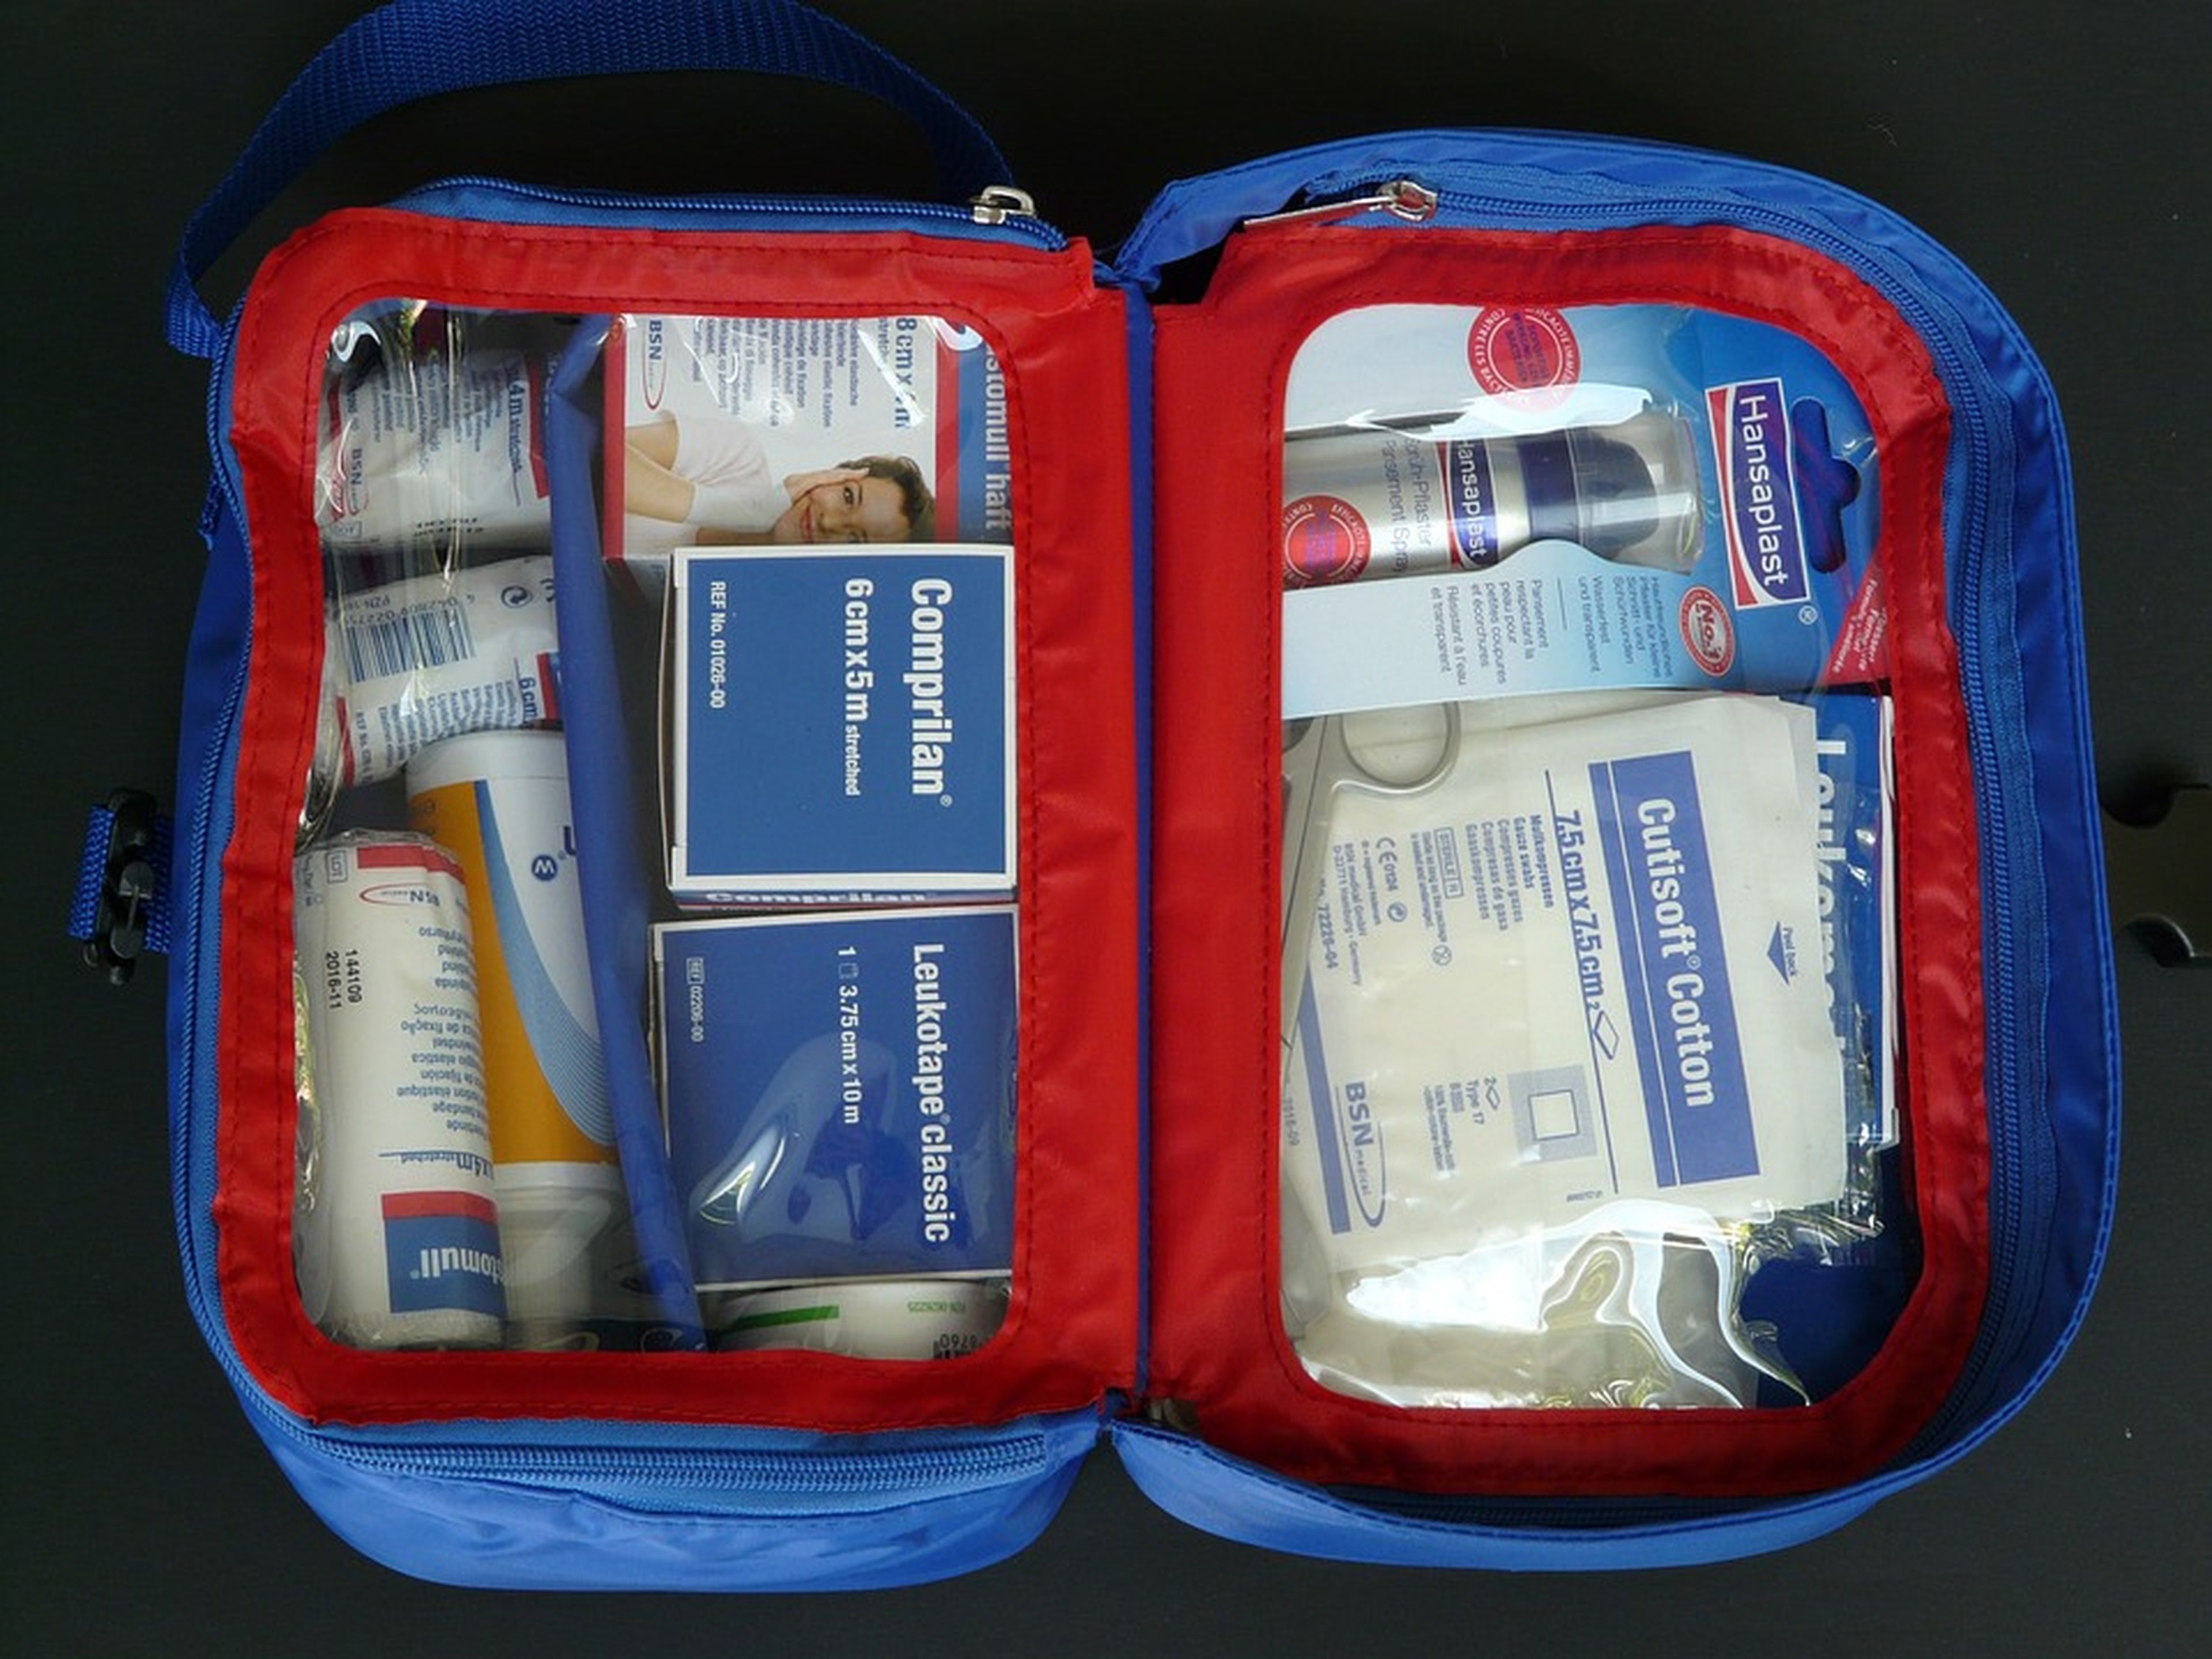 kit de primeros auxilios